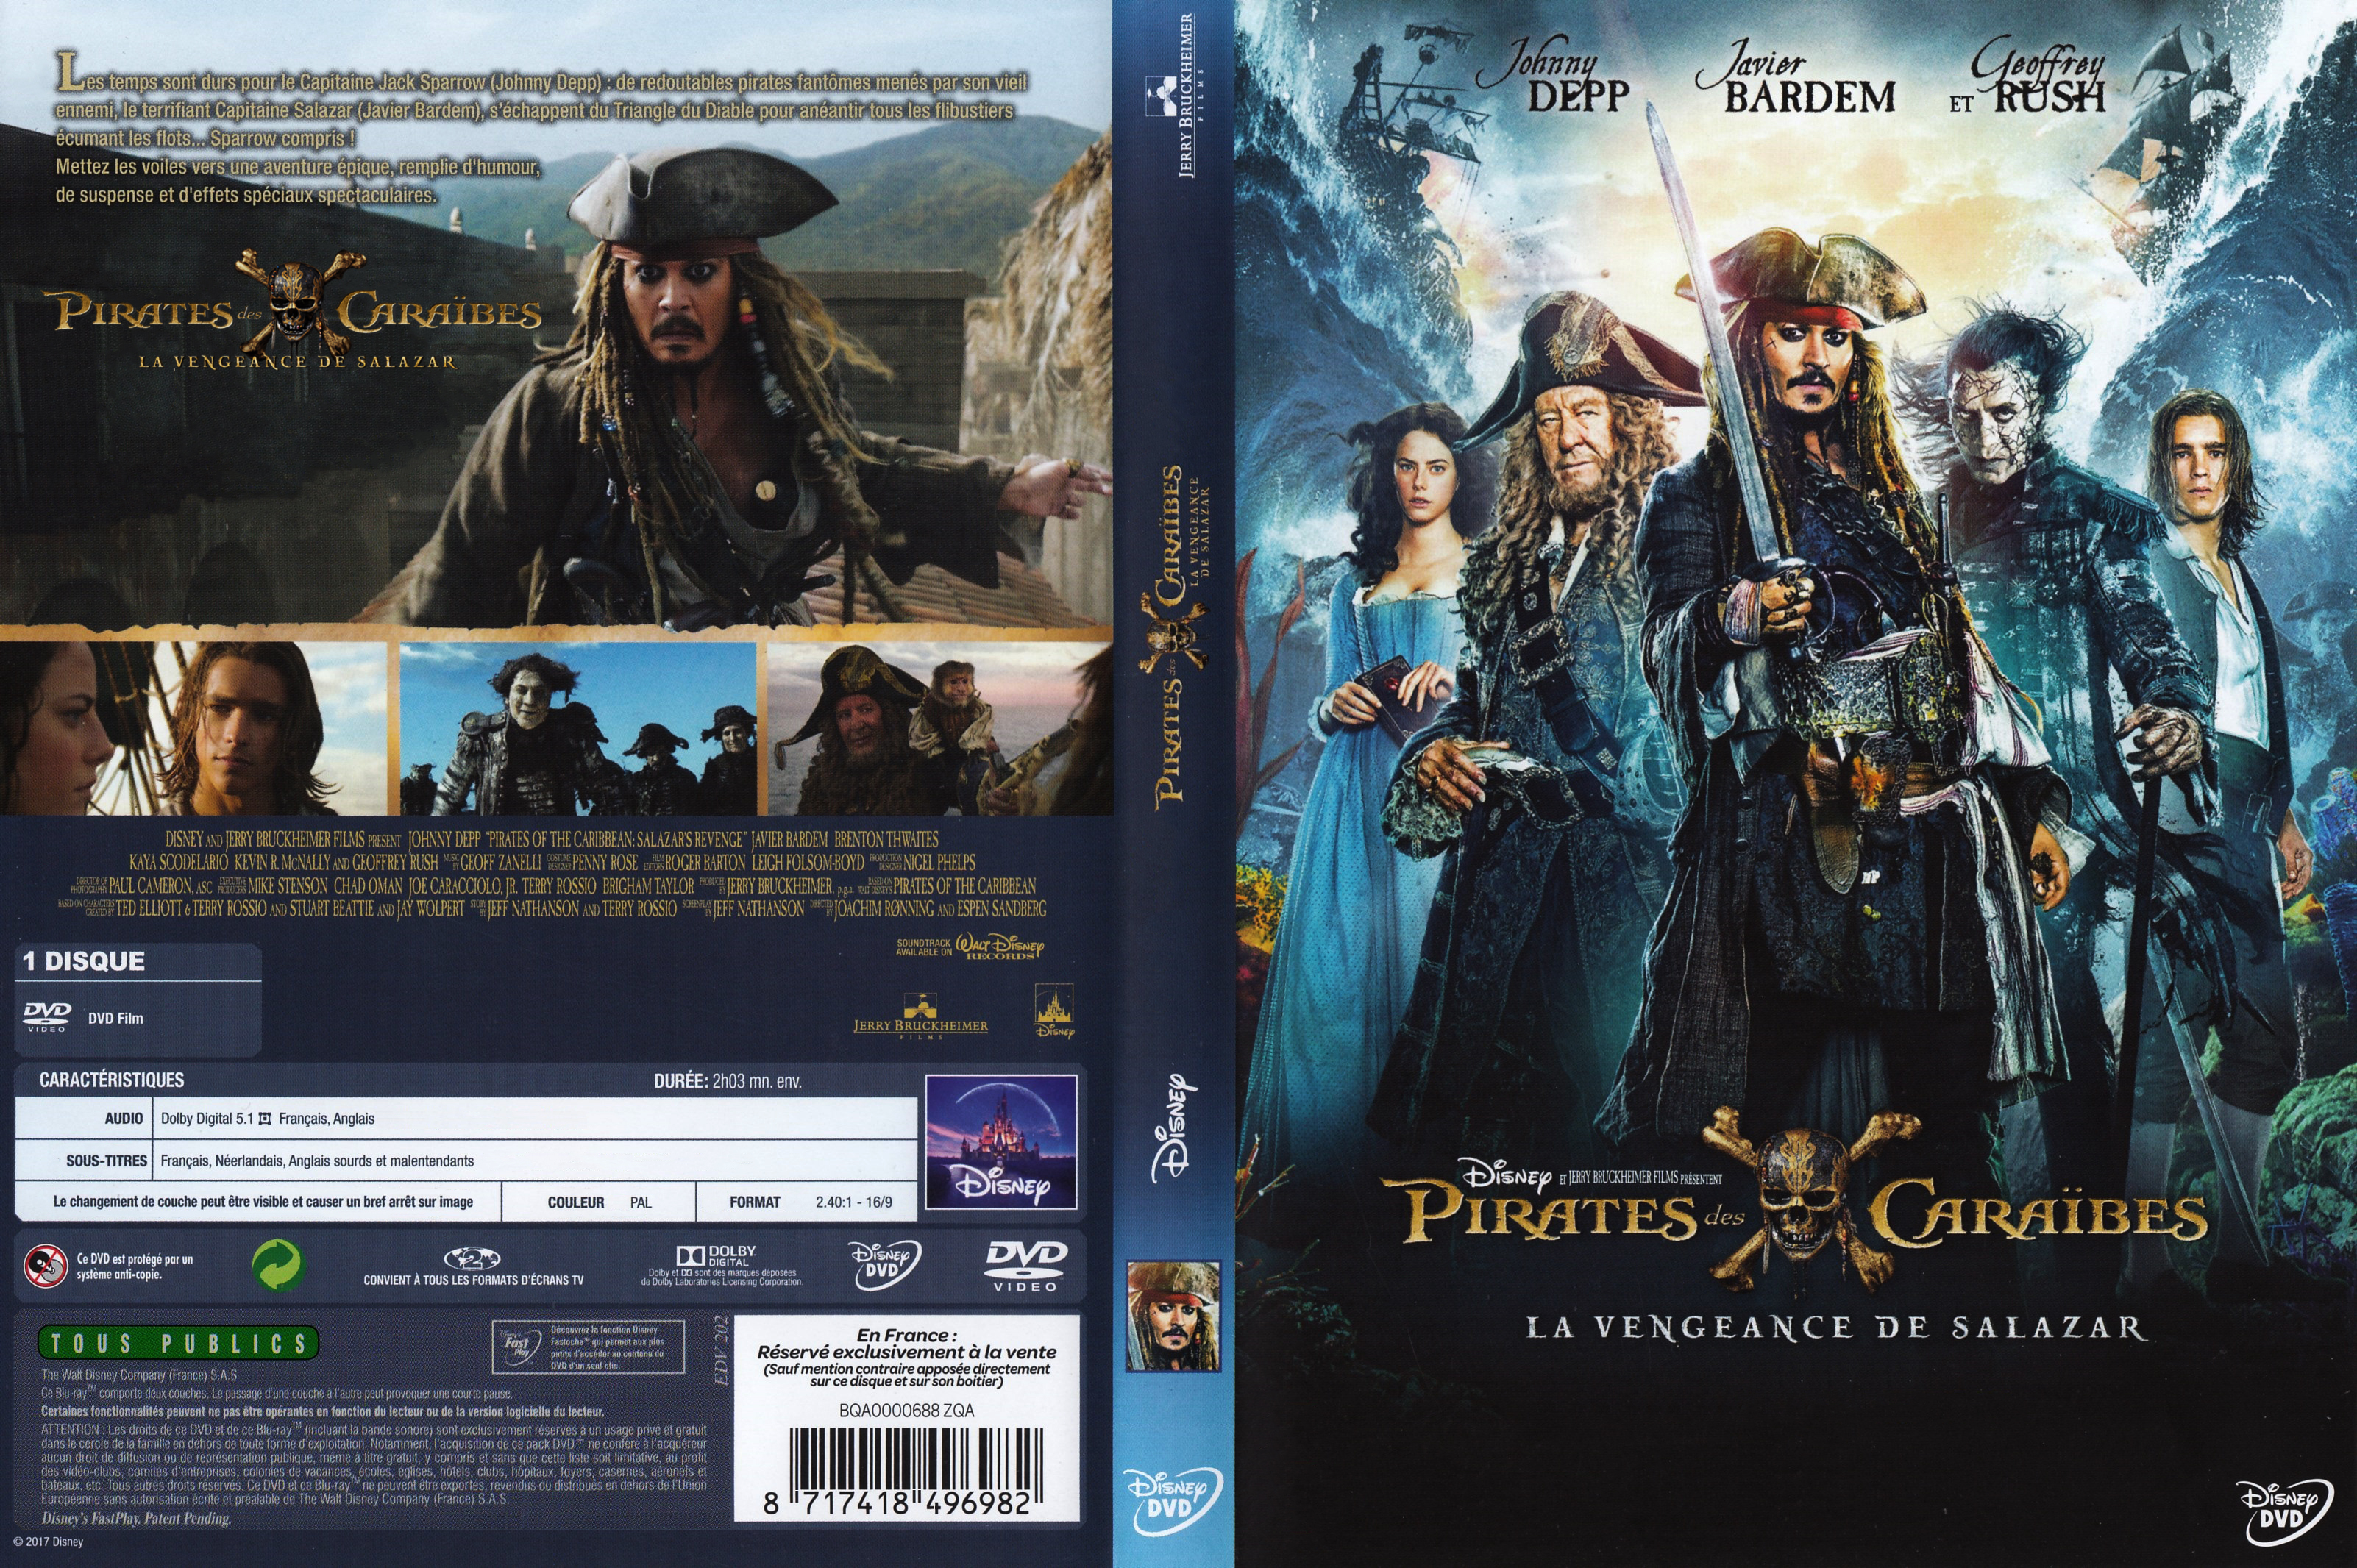 Jaquette DVD Pirates des Caraibes : La Vengeance de Salazar custom